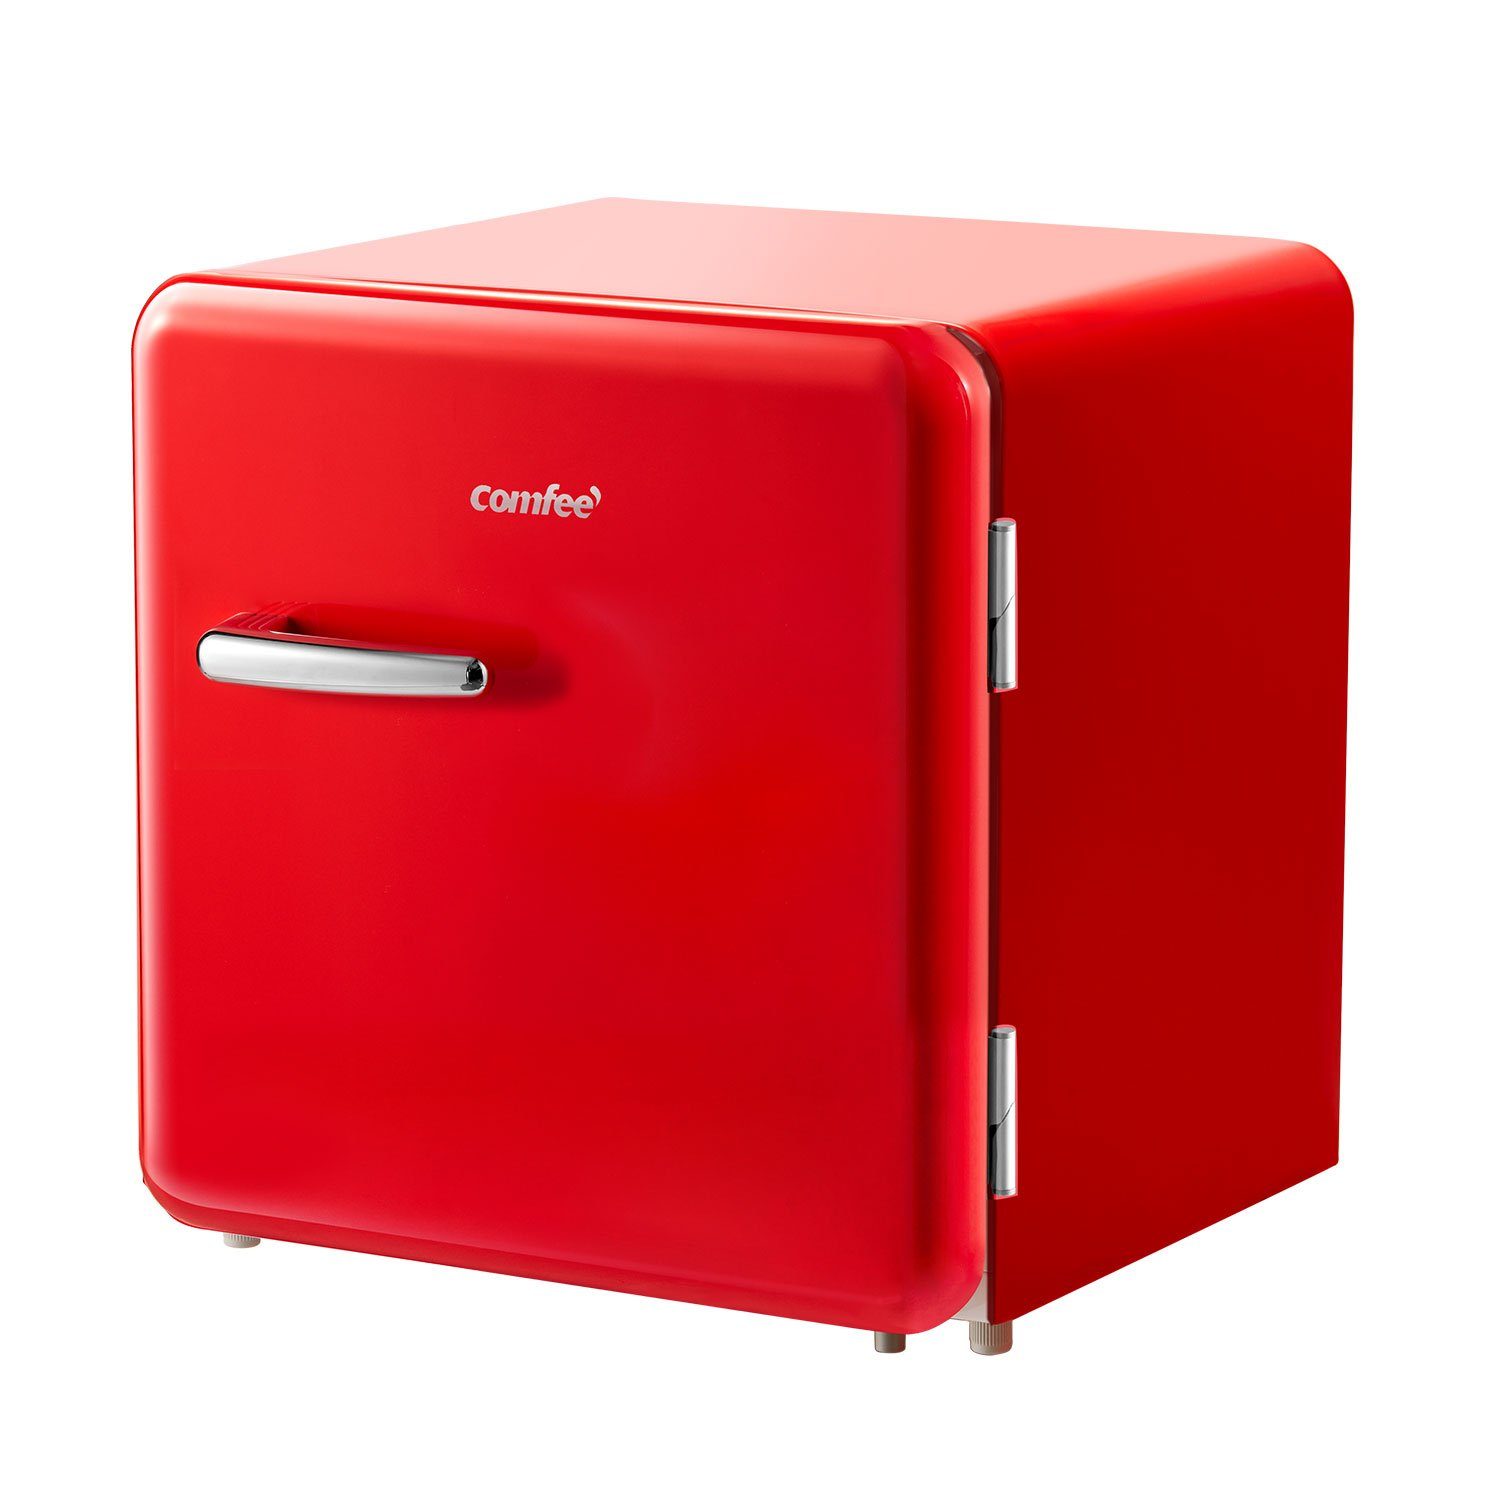 Comfee RCD50RE1RT 47L Kühlbox Mini-Kühlschrank/Retro Kühlschrank 100 kWh/Jahr/Einstellbare Temperaturregelung/Verstellbare Standfüße/Rot 50cm Höhe E 